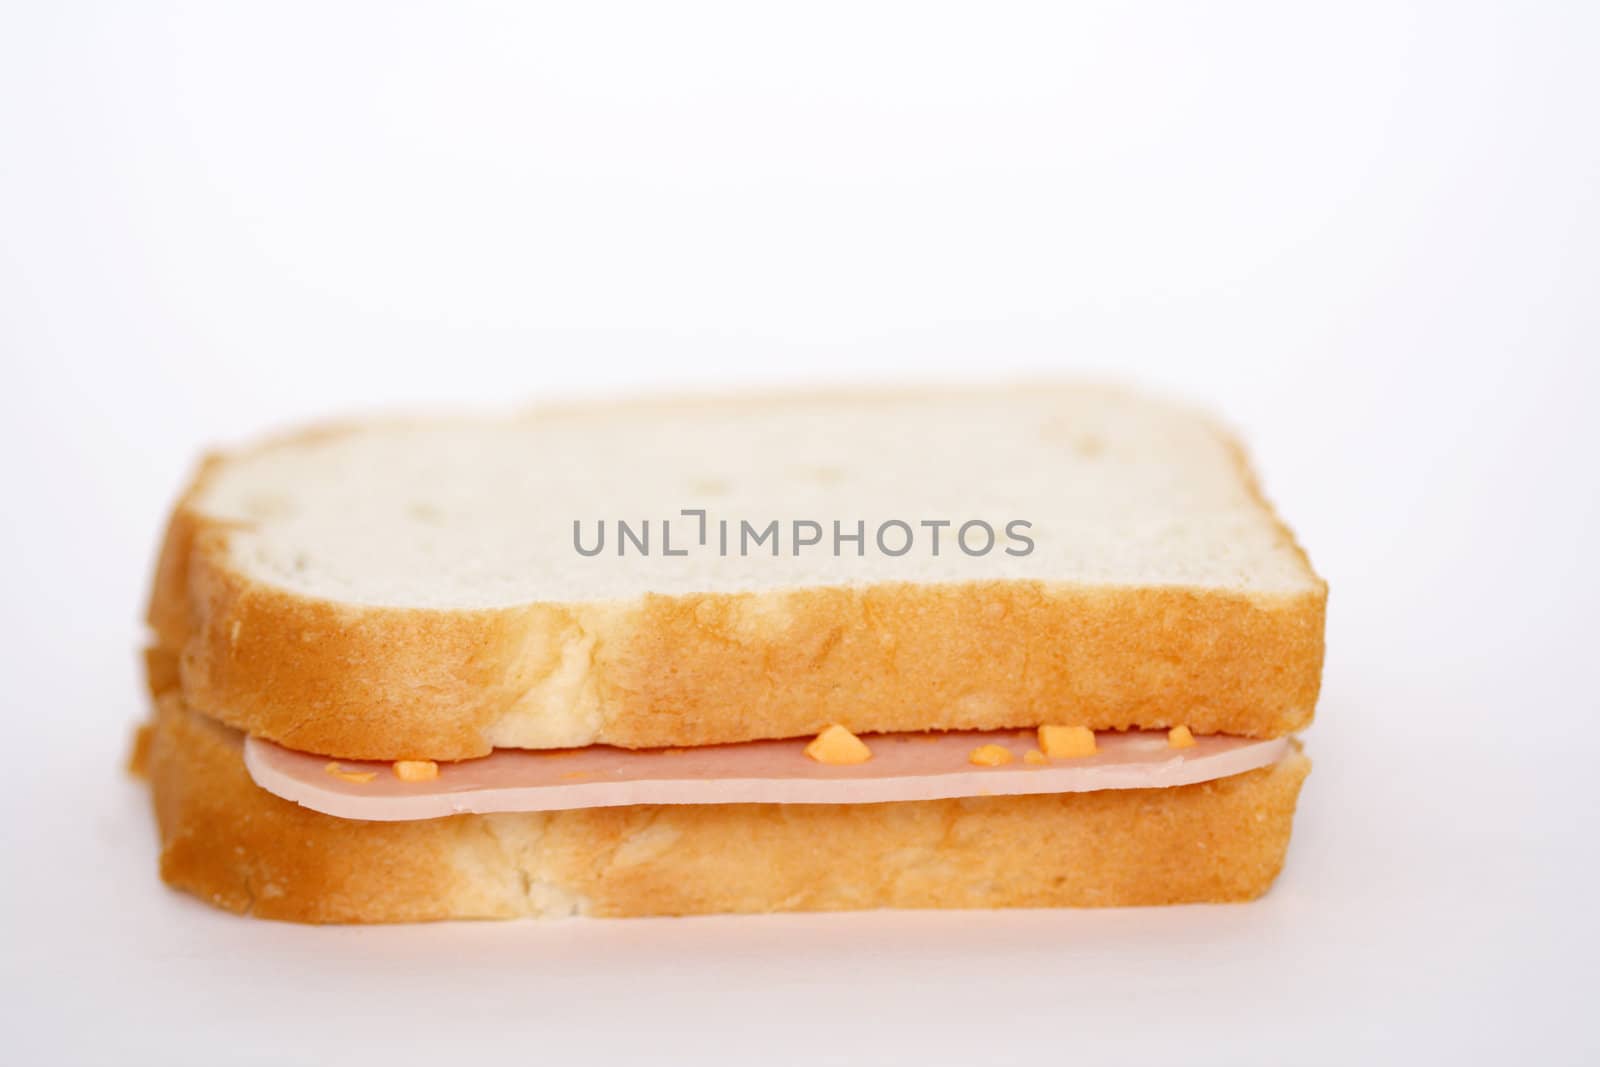 Plain ham sandwich